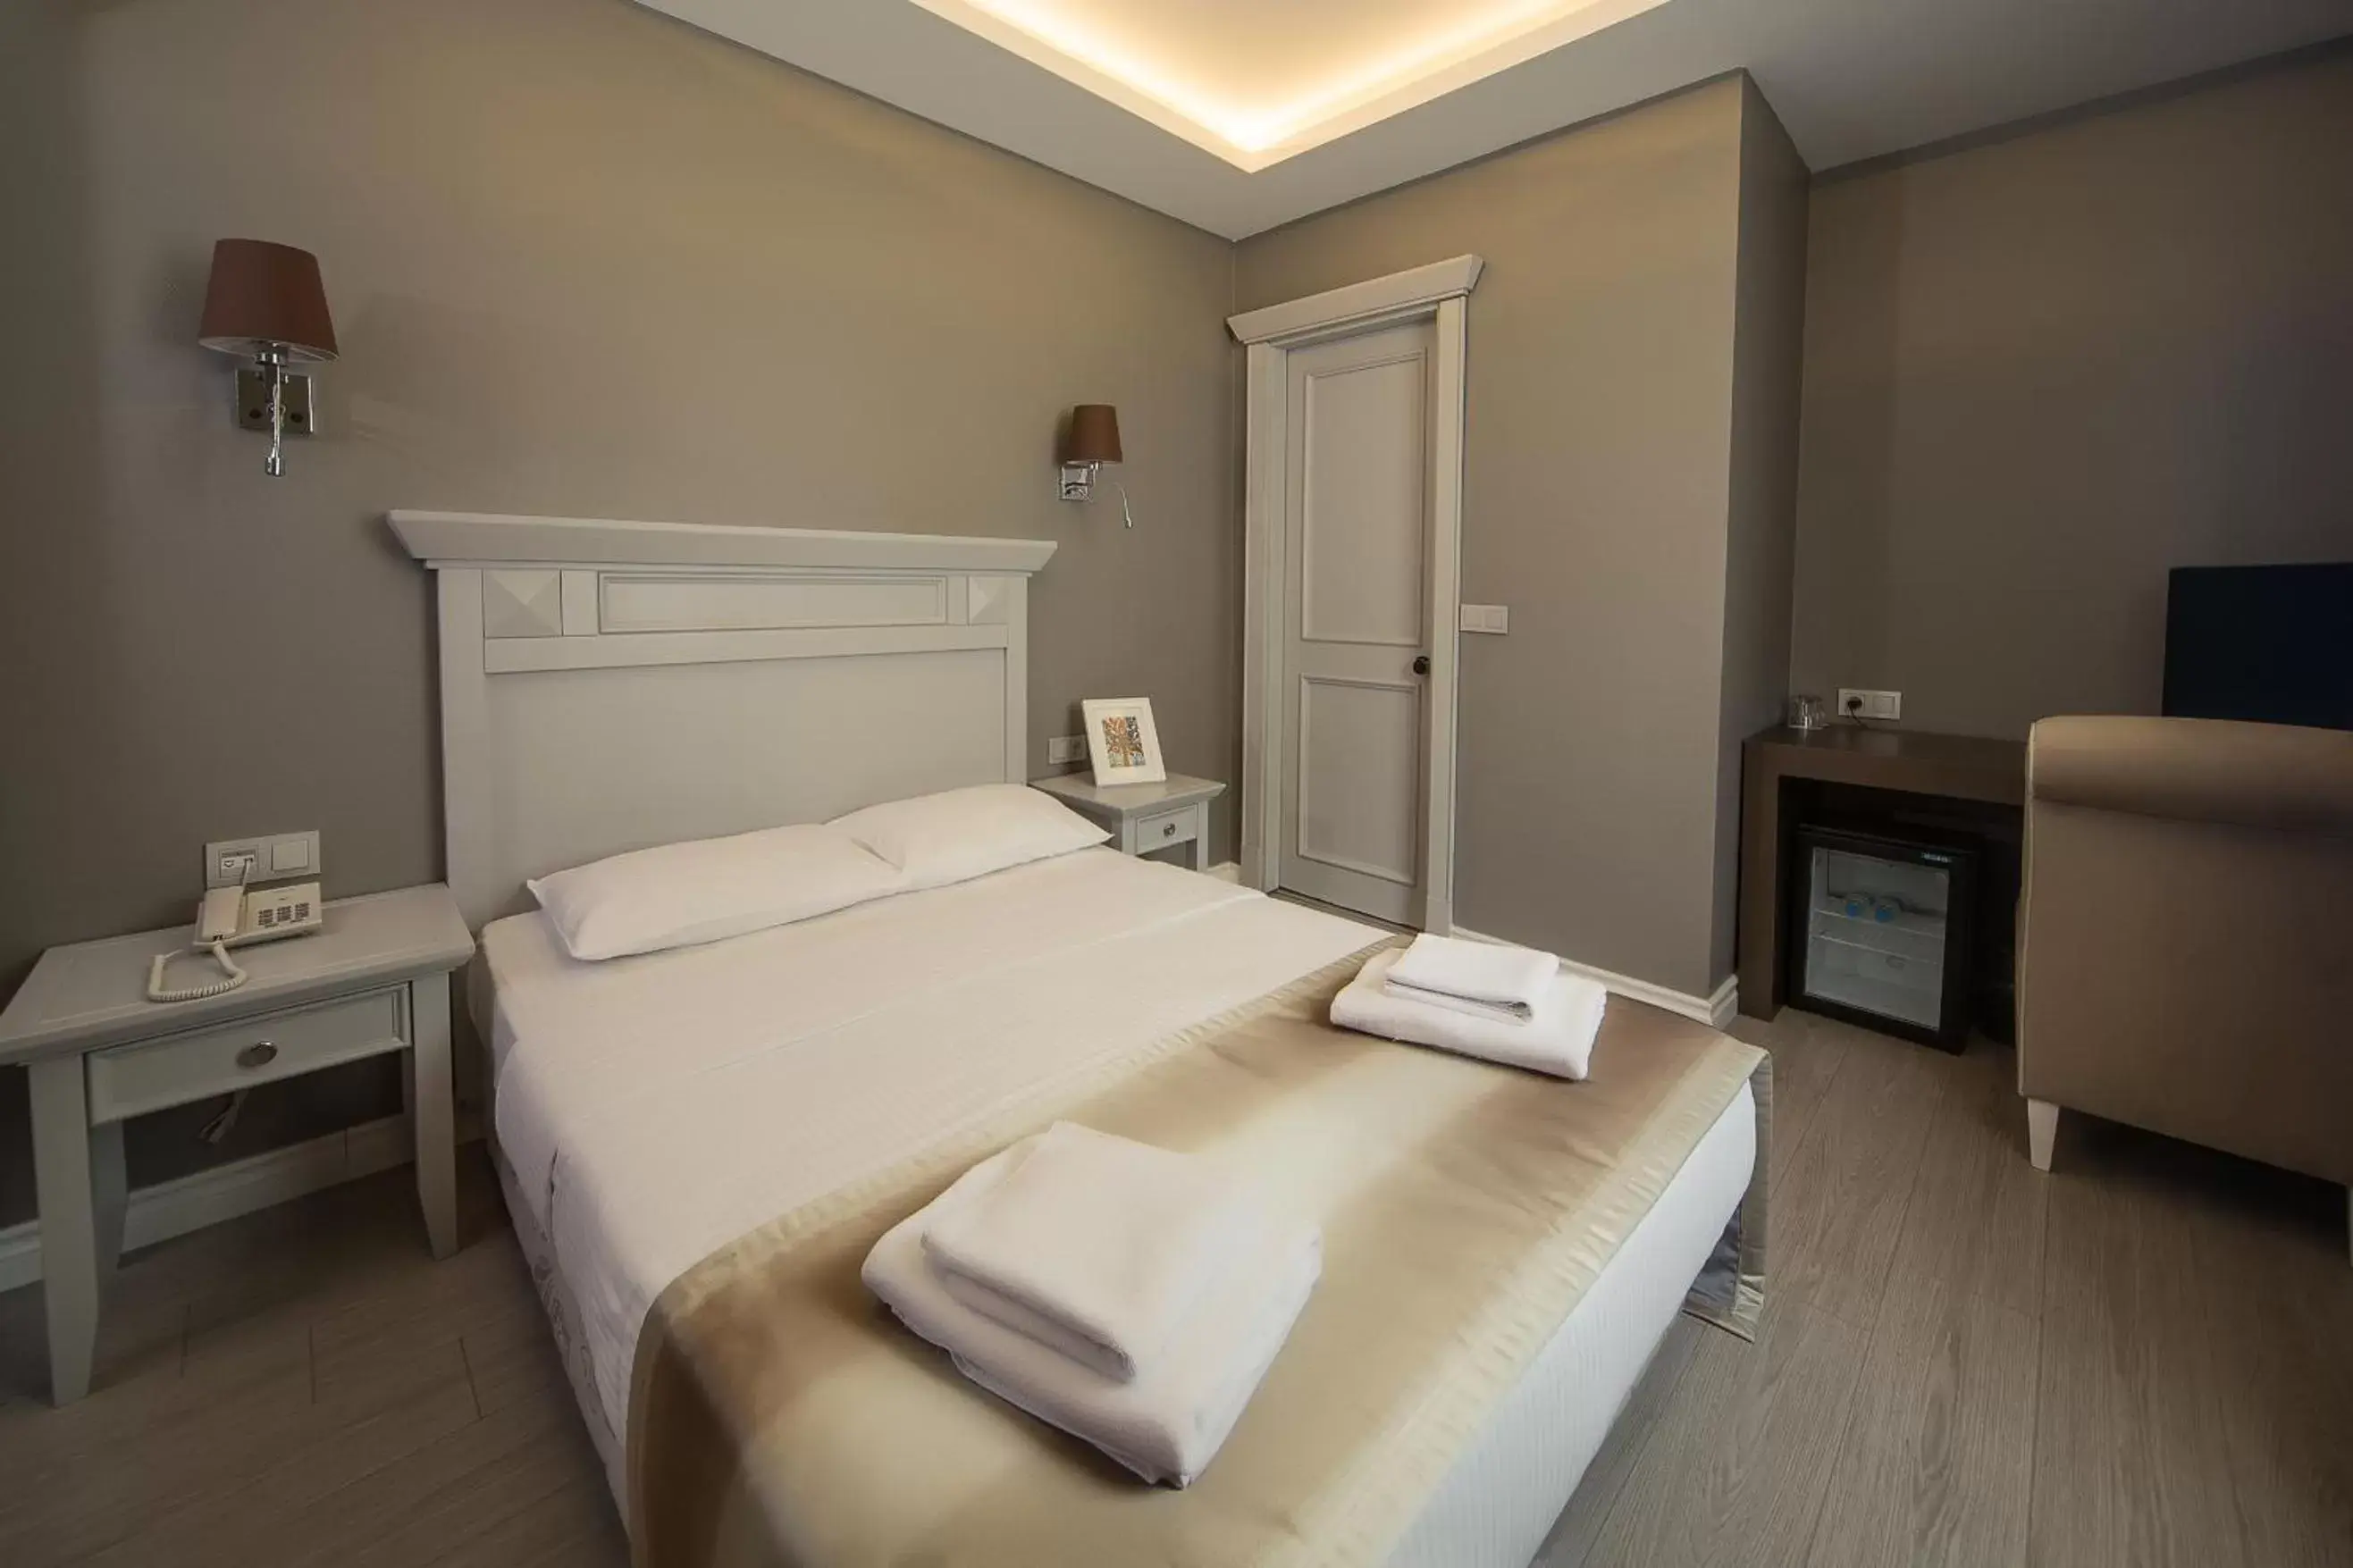 Bed in Semsan Hotel